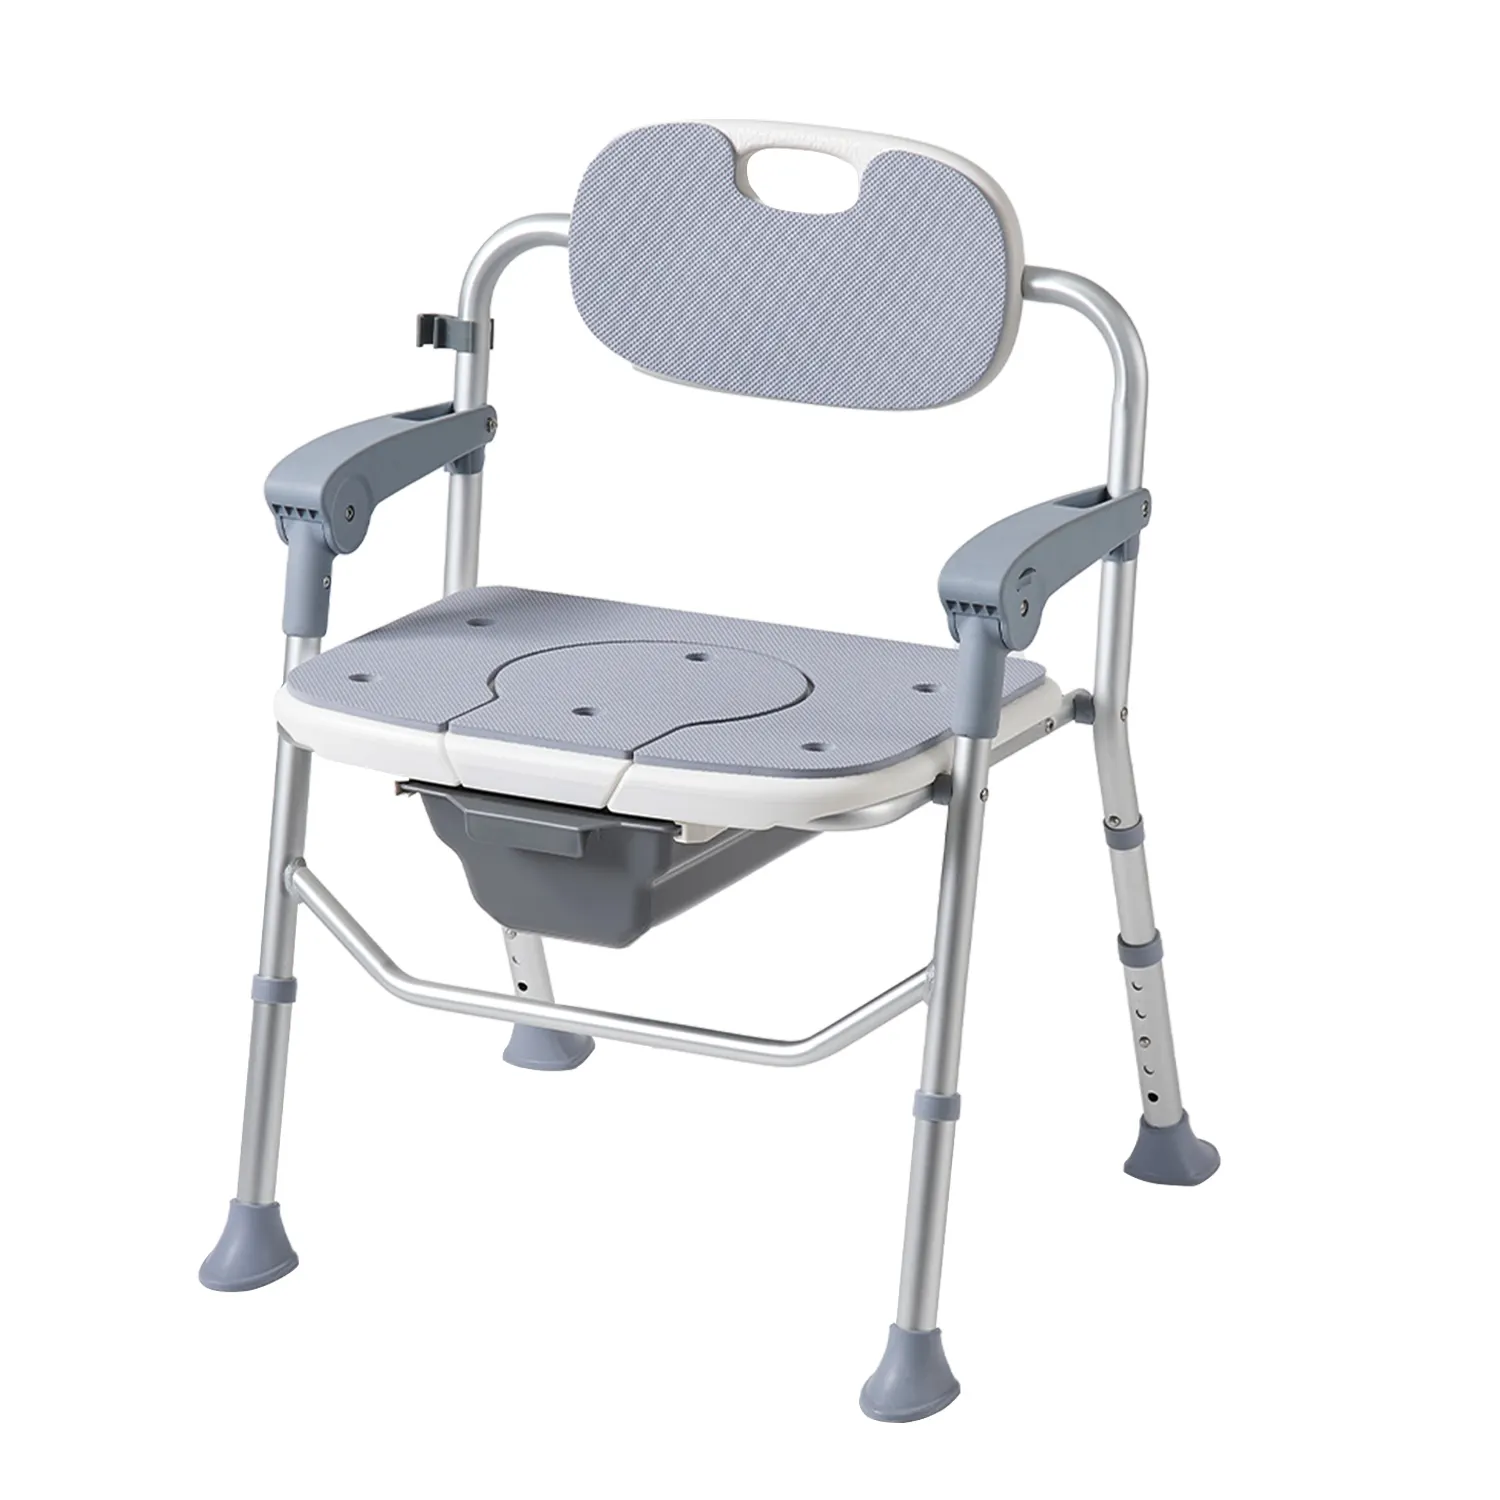 Медицинское оборудование Jiale, кресло для ванной комнаты, стул для душа, стул для ванной, нескользящий коврик для ног, легко складывается, защита от опрокидывания